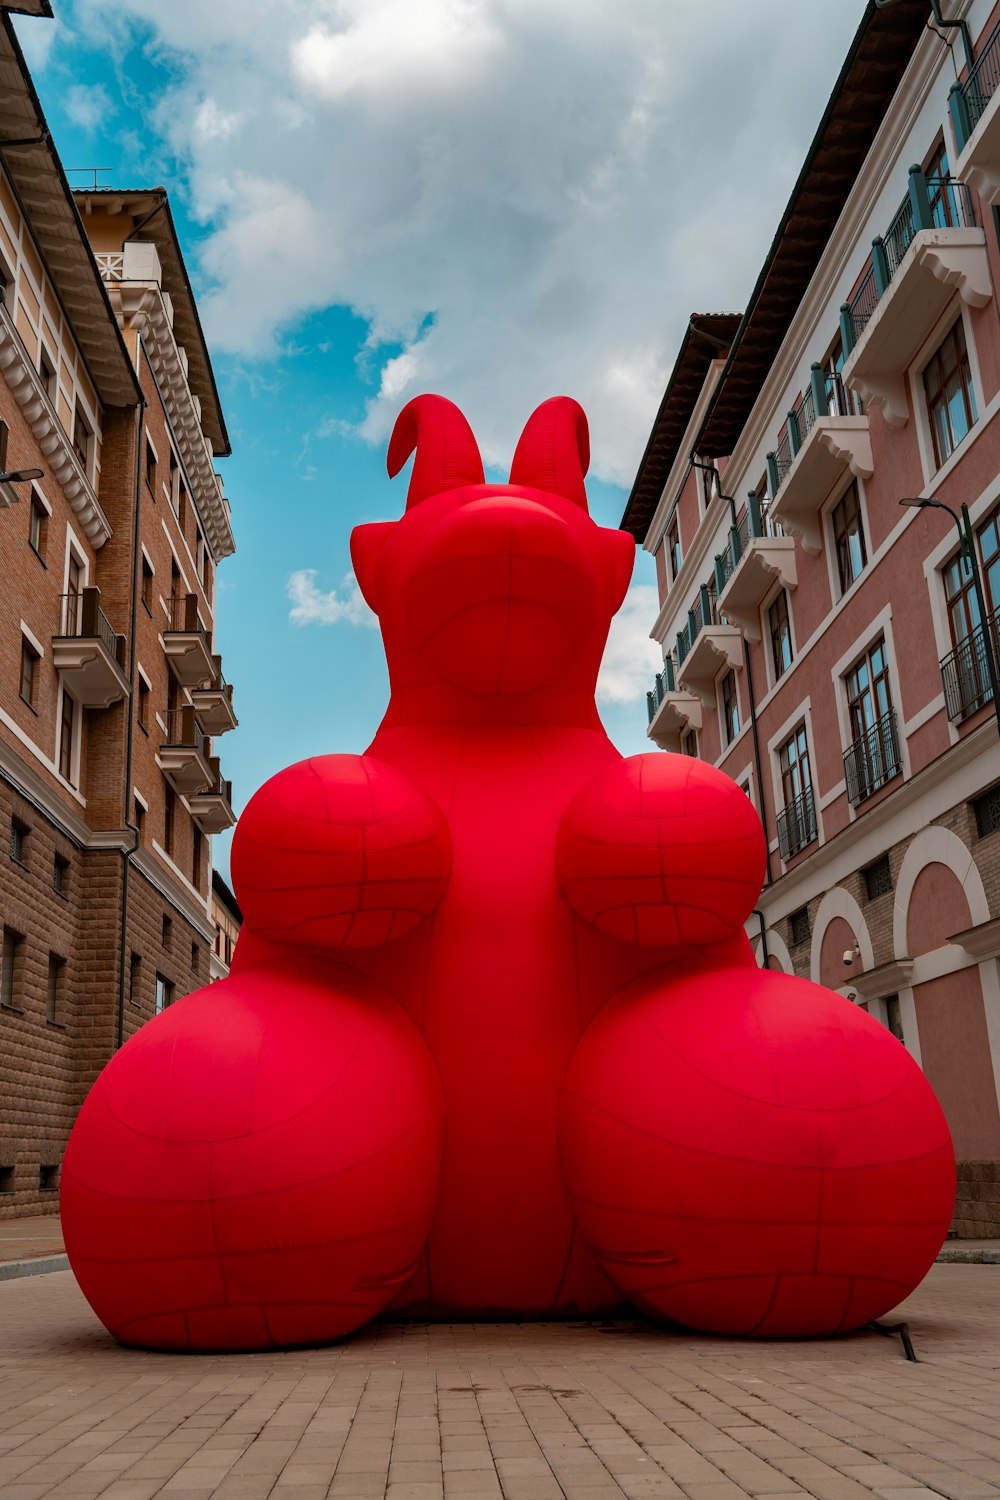 Eine große rote Skulptur mitten auf einer Straße